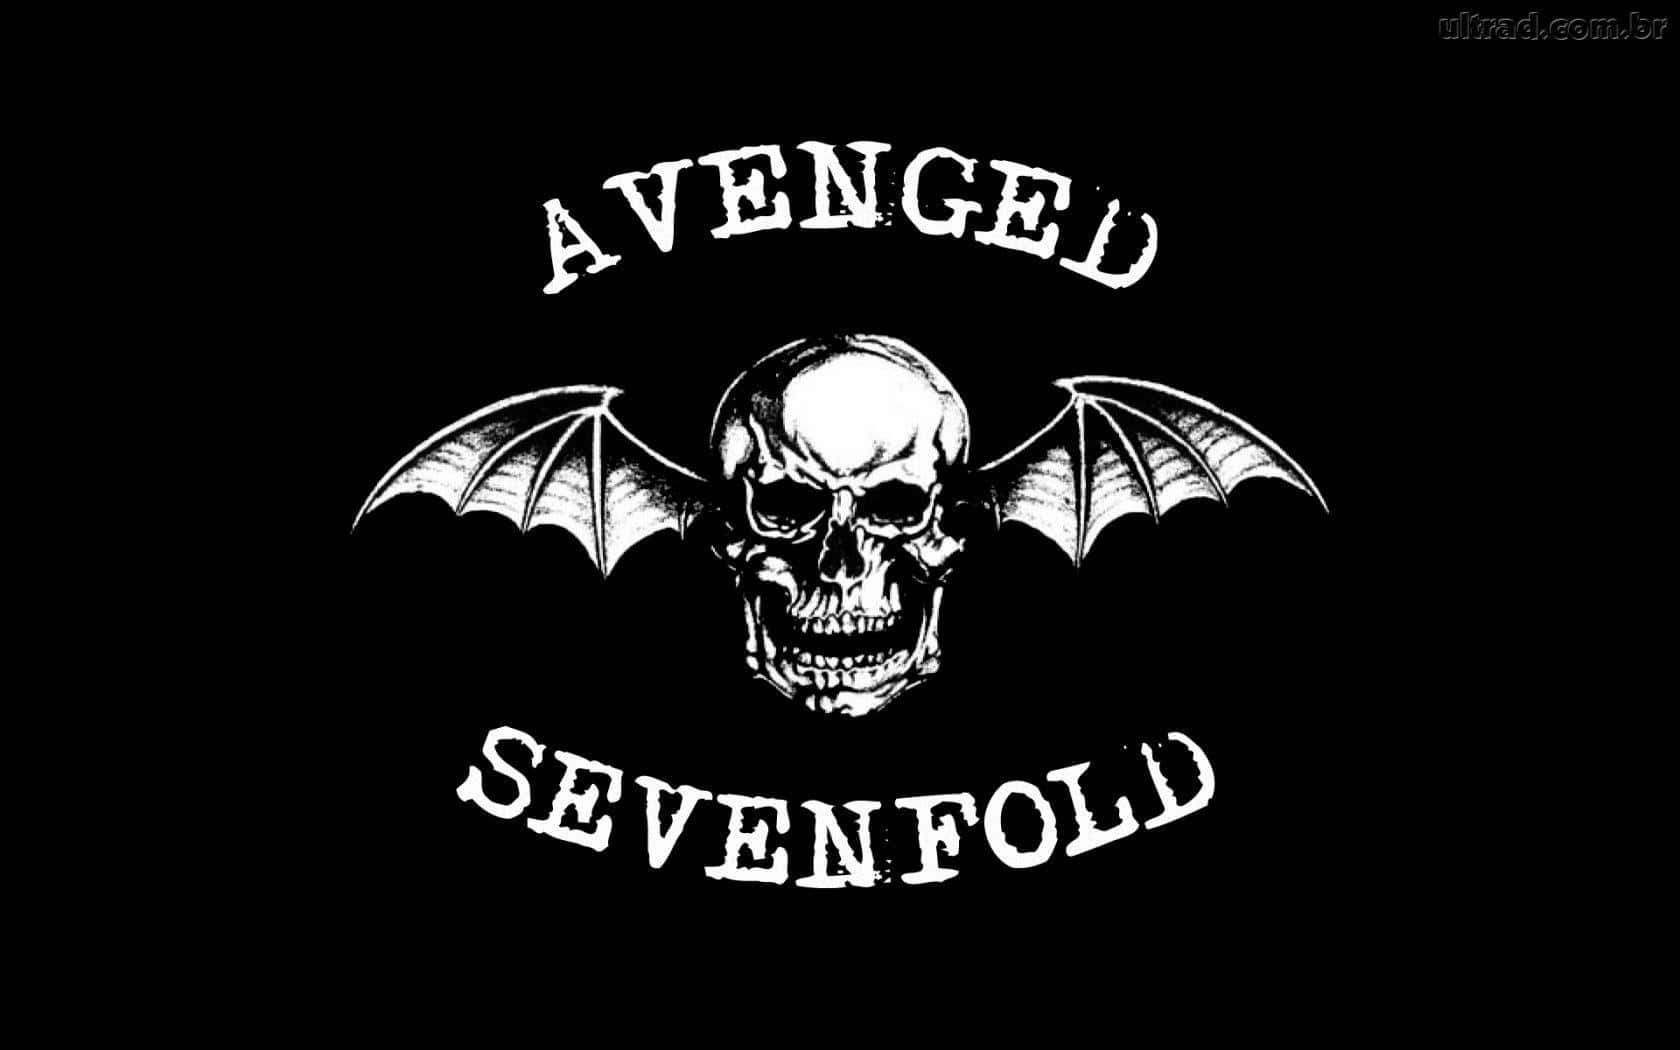 Logodo Avenged Sevenfold Em Um Fundo Preto. Papel de Parede